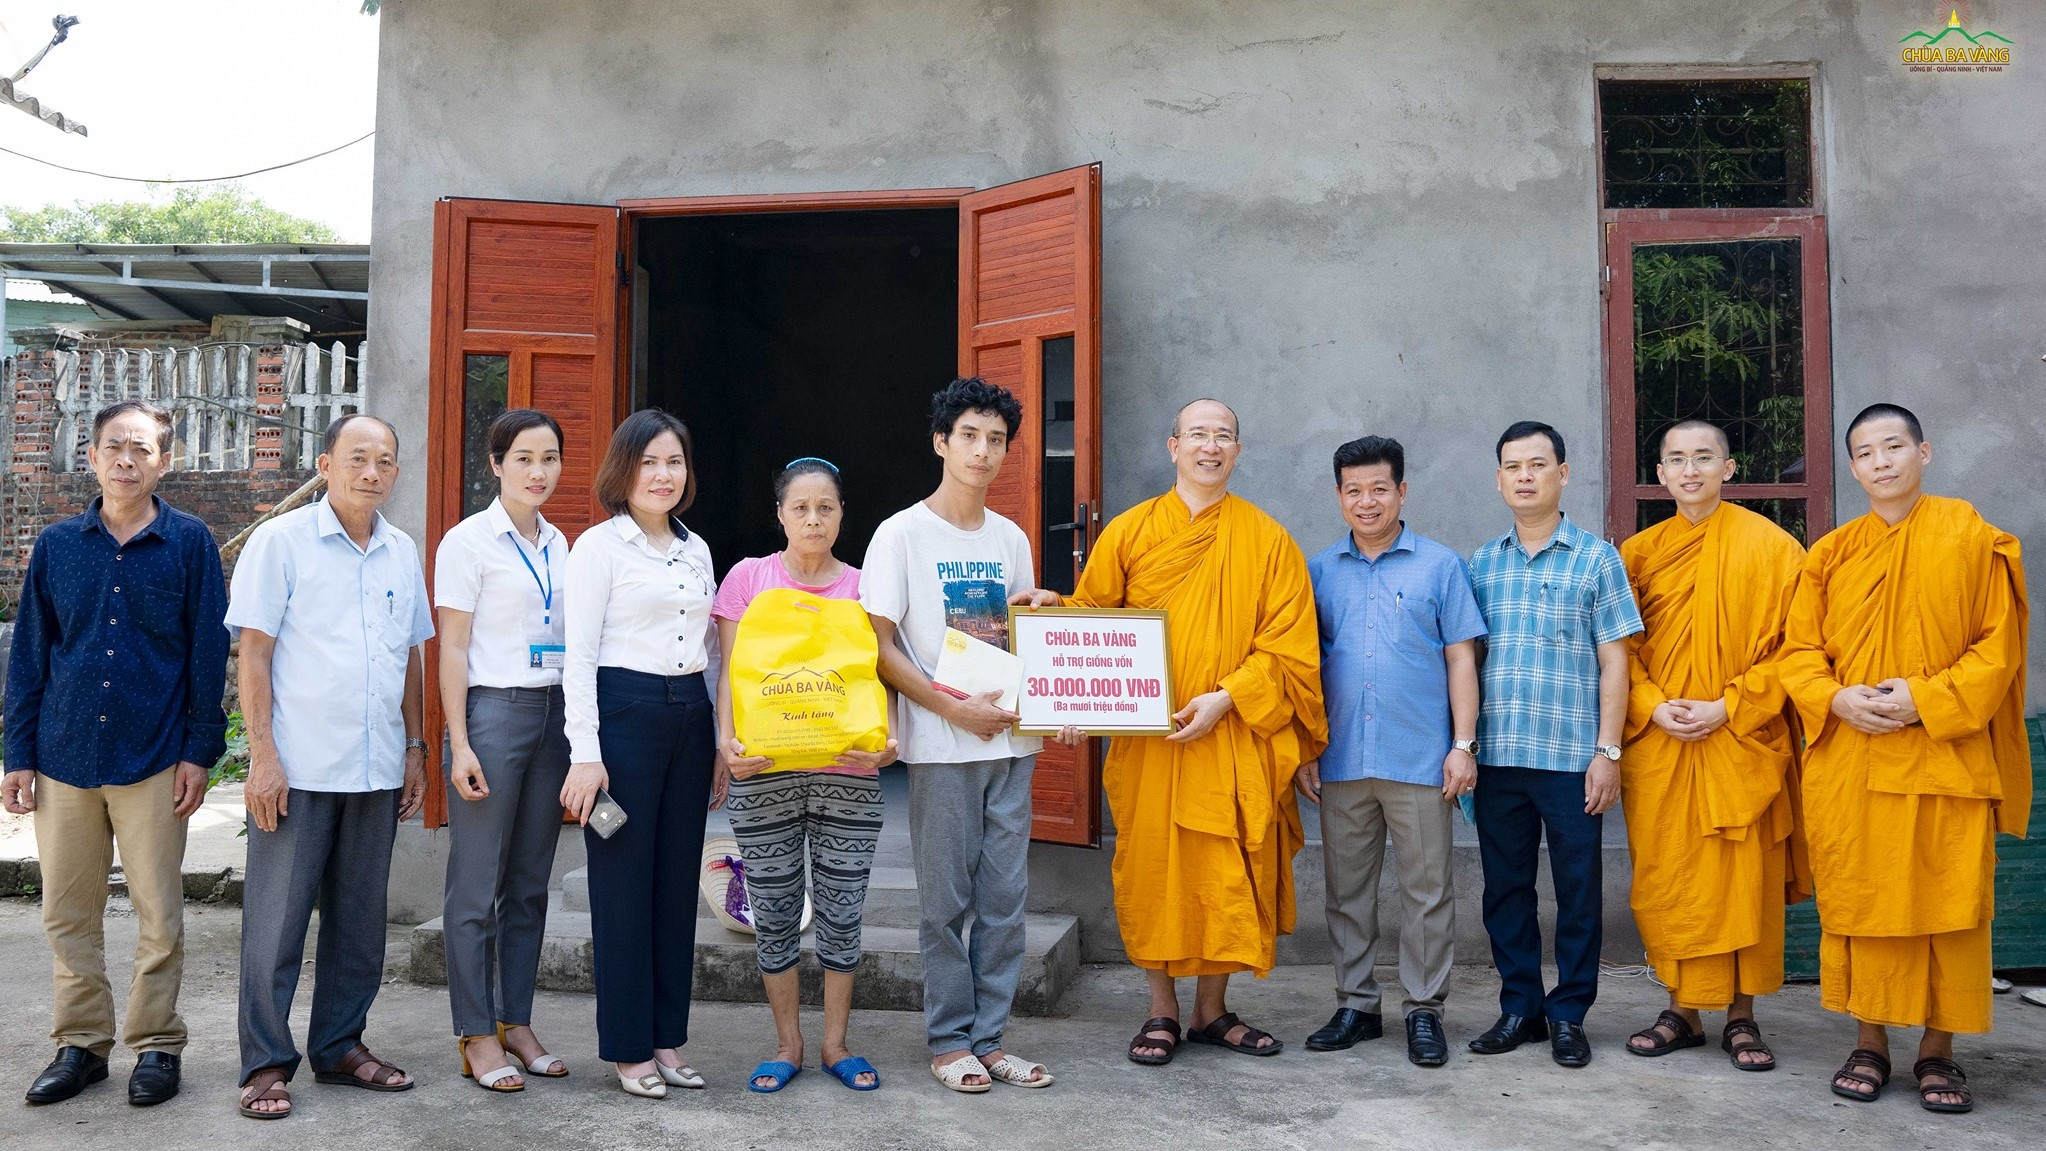 Gia đình bà Nguyễn Thị Hiên đón nhận sự ủng hộ từ chùa Ba Vàng